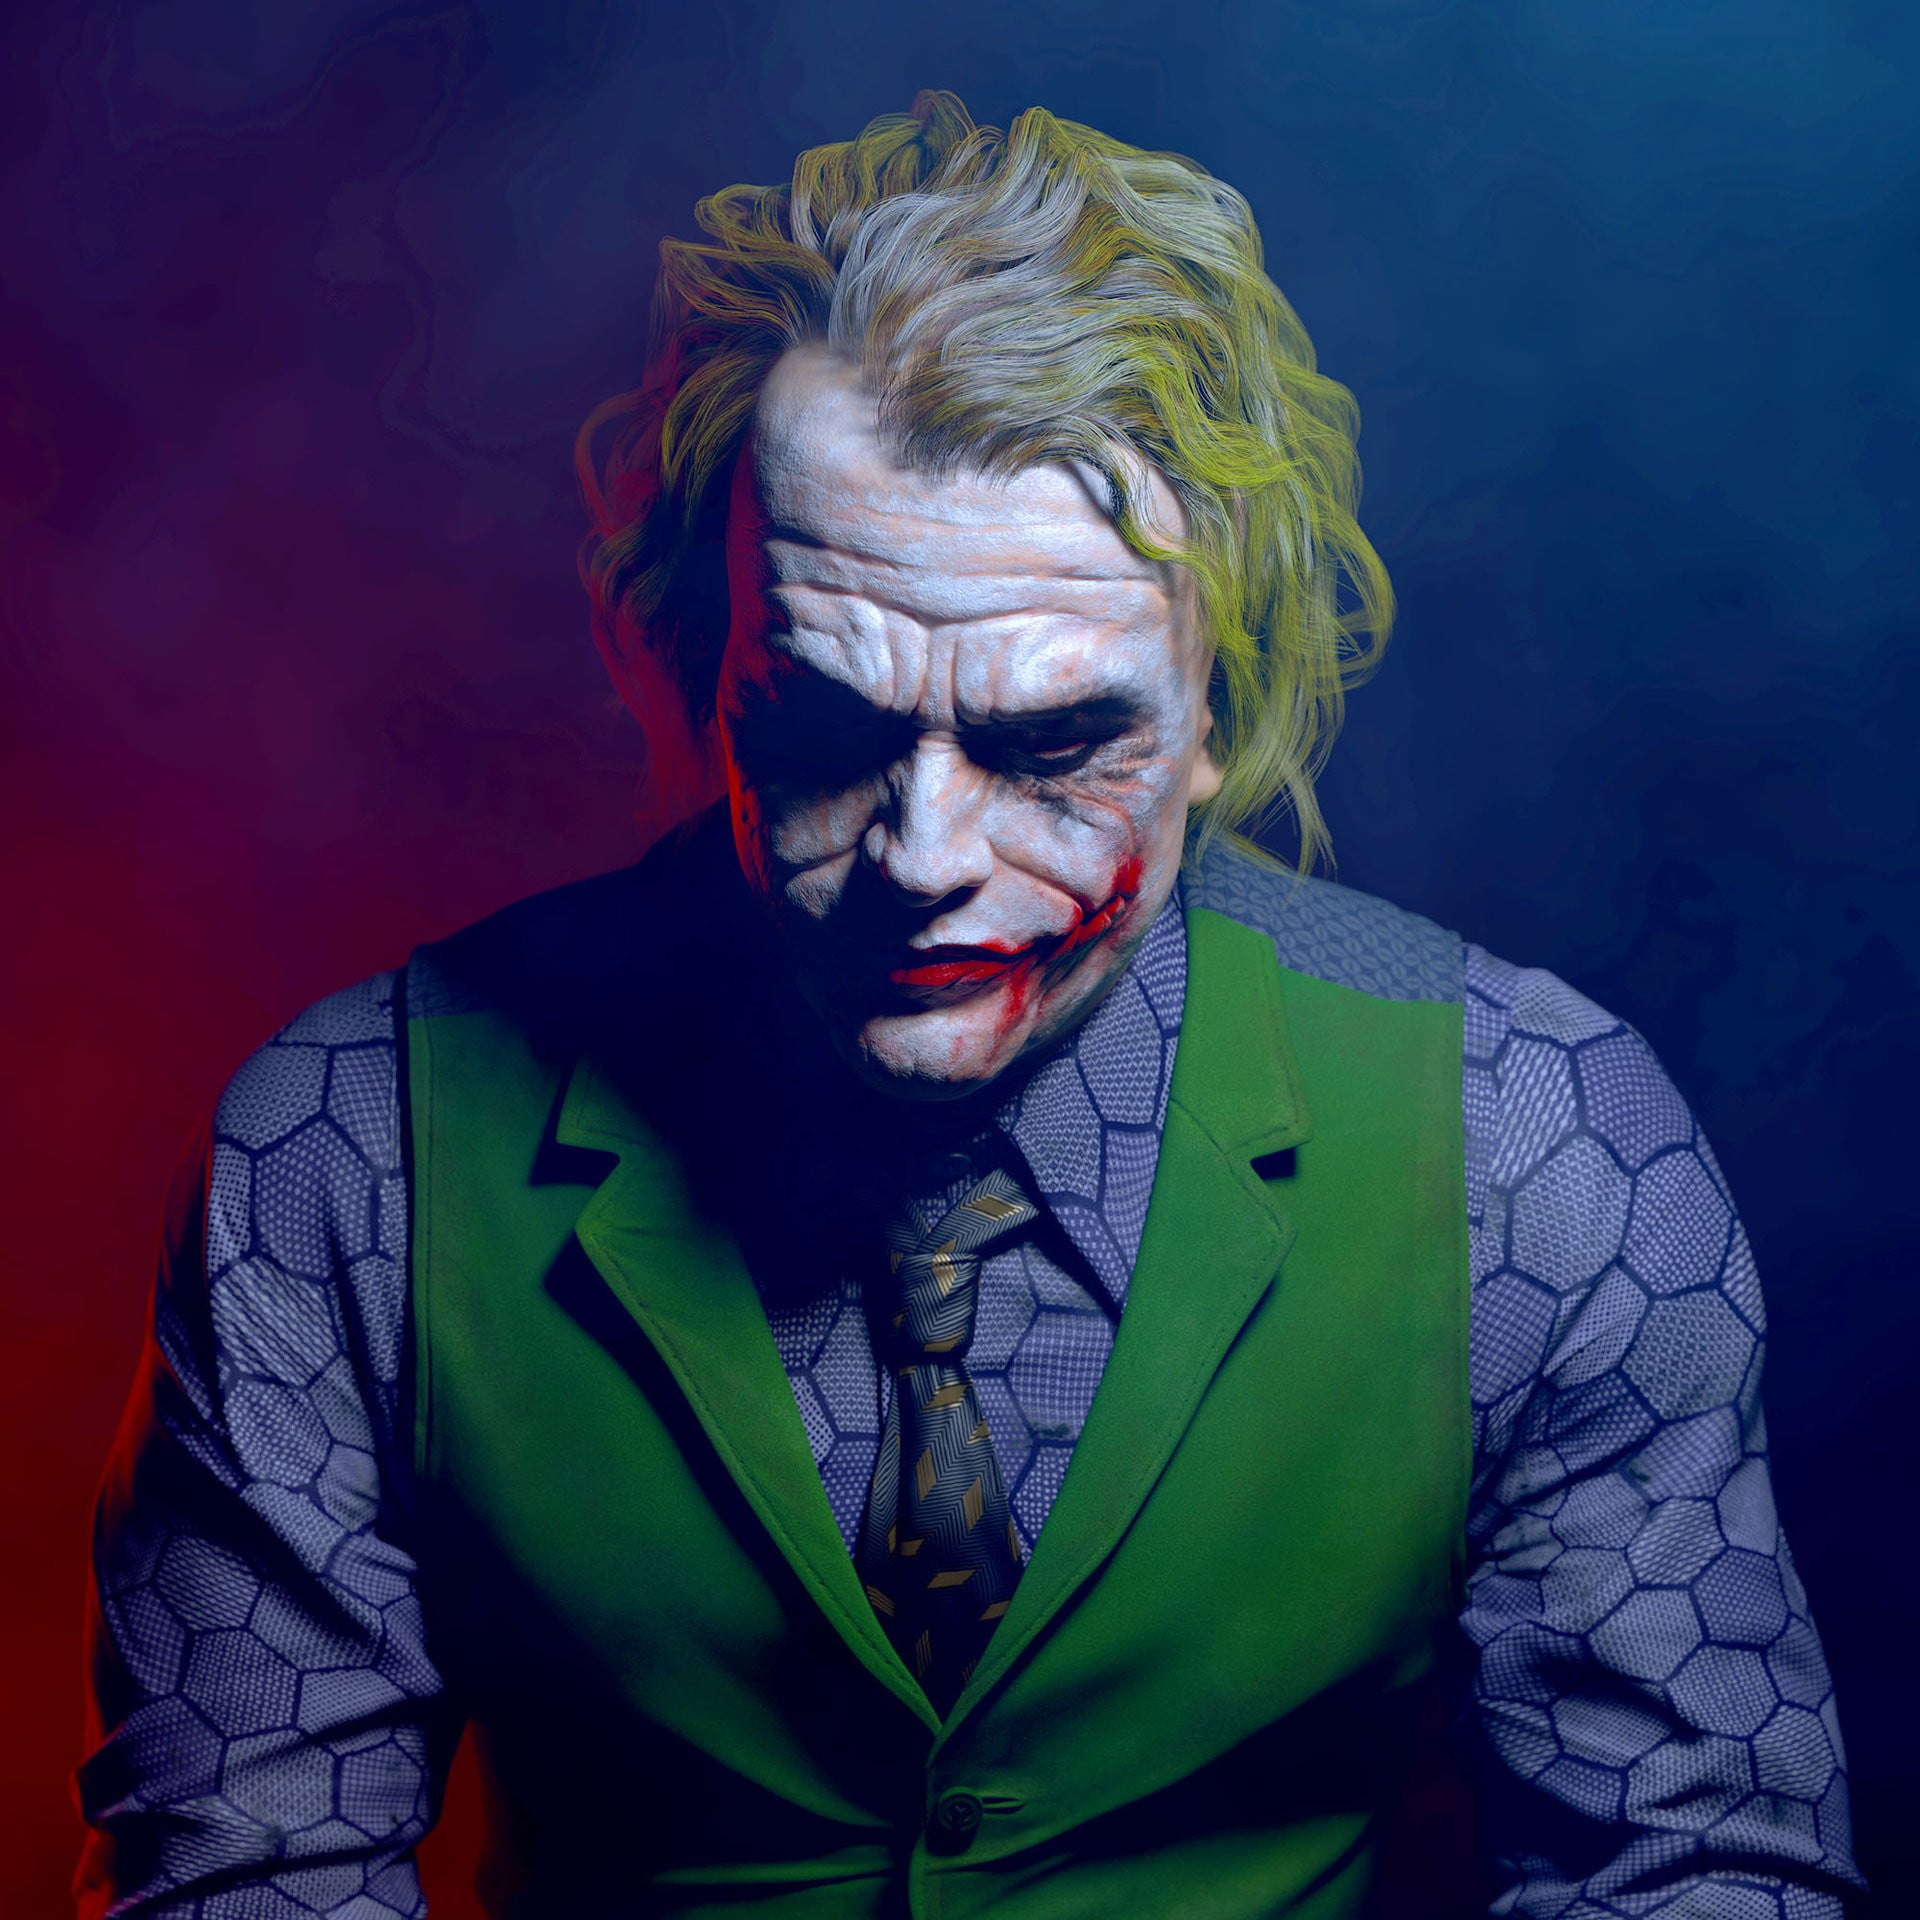 Joker/Heath Ledger